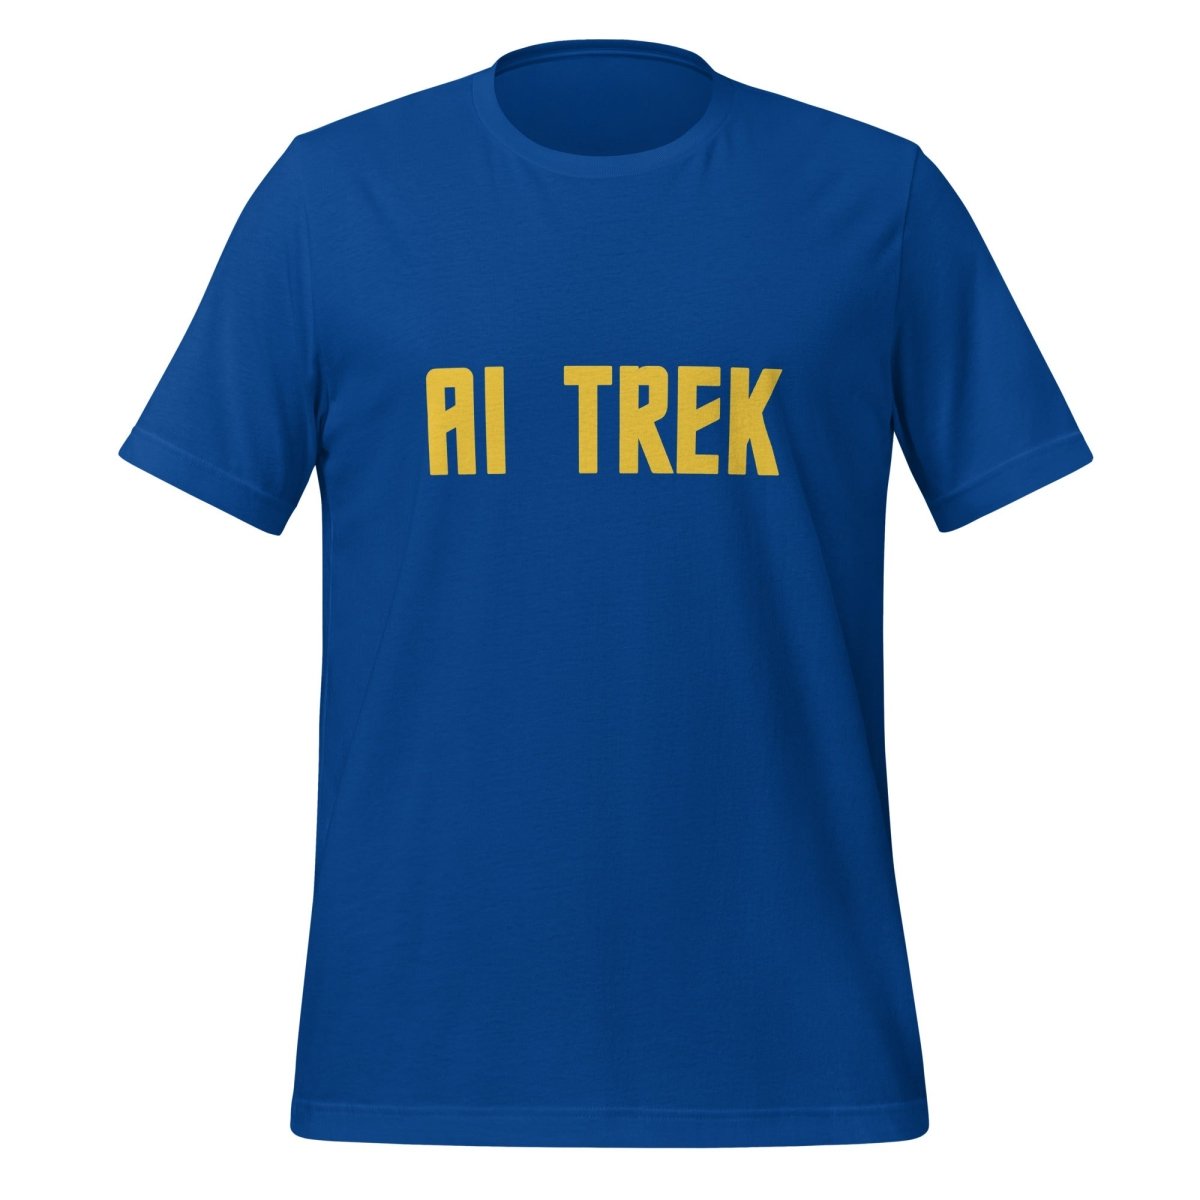 AI TREK T - Shirt (unisex) - True Royal - AI Store